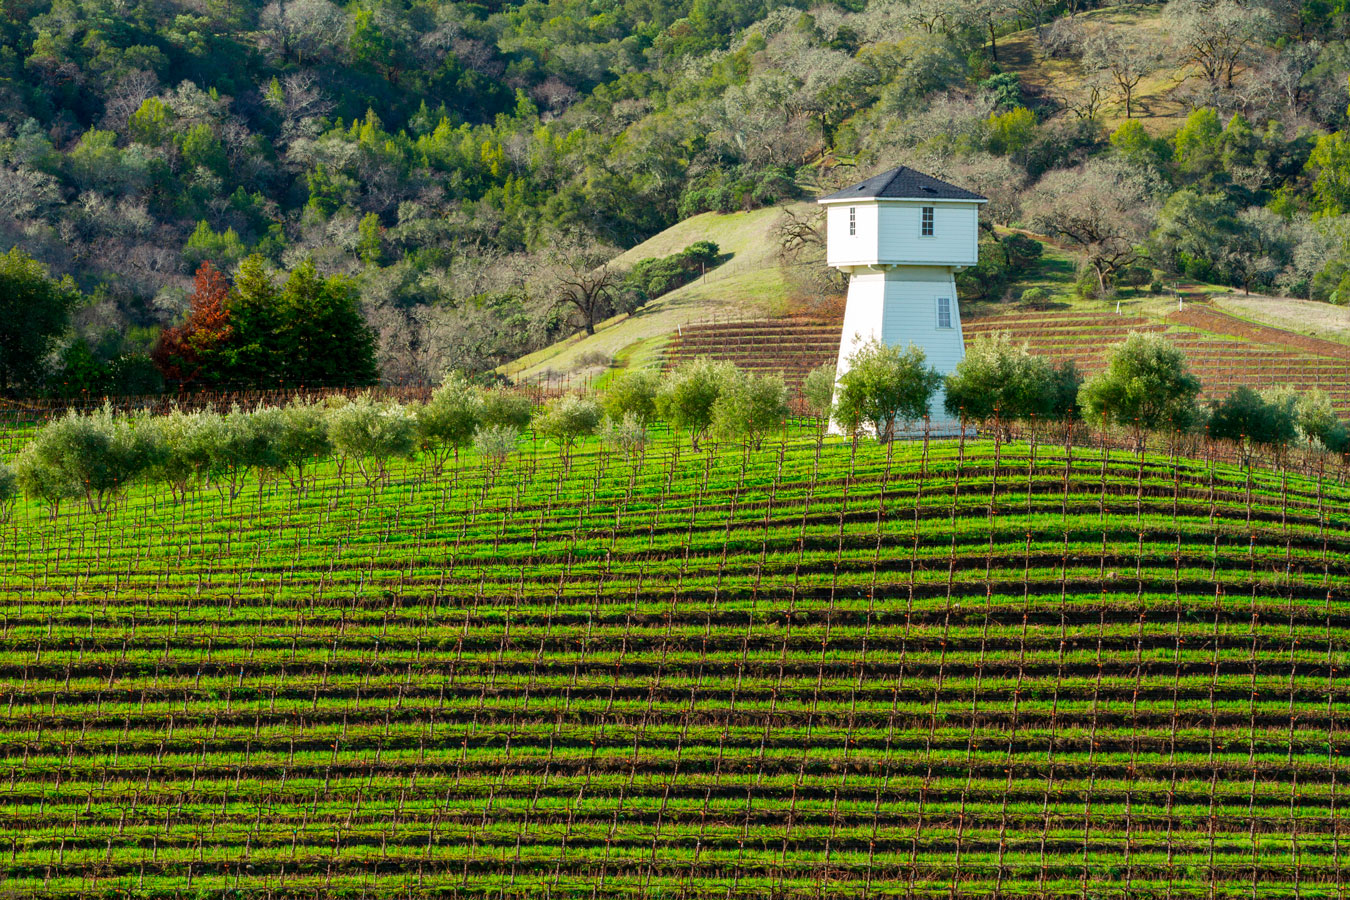 Condado de Sonoma, nos Estados Unidos, é o epicentro dos melhores vinhos do país norte-americano